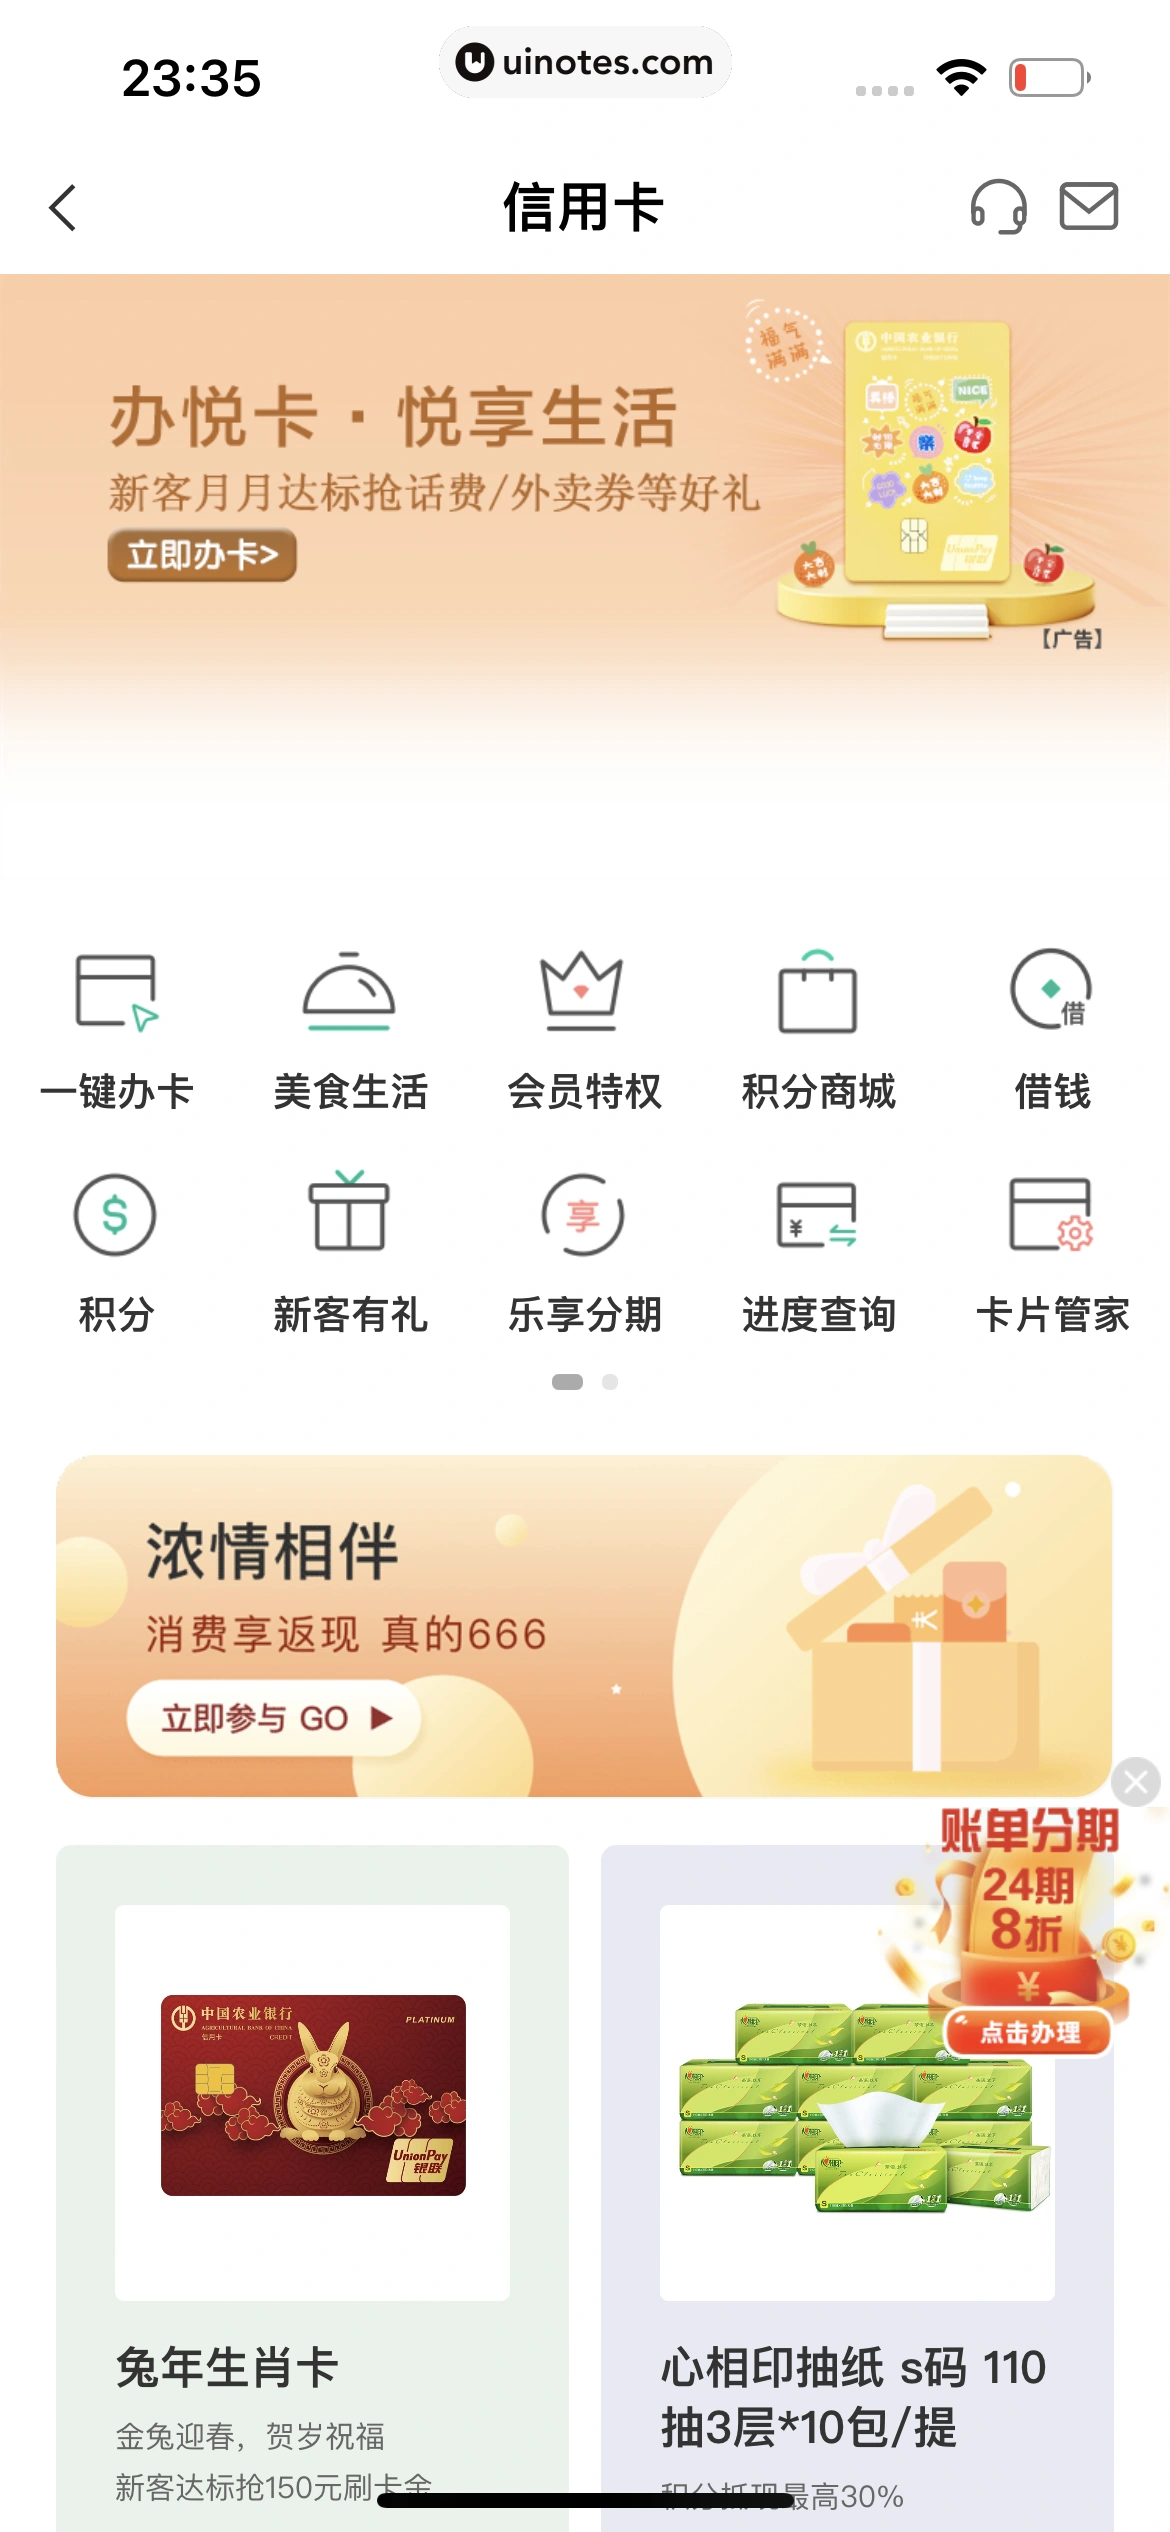 中国农业银行 App 截图 088 - UI Notes